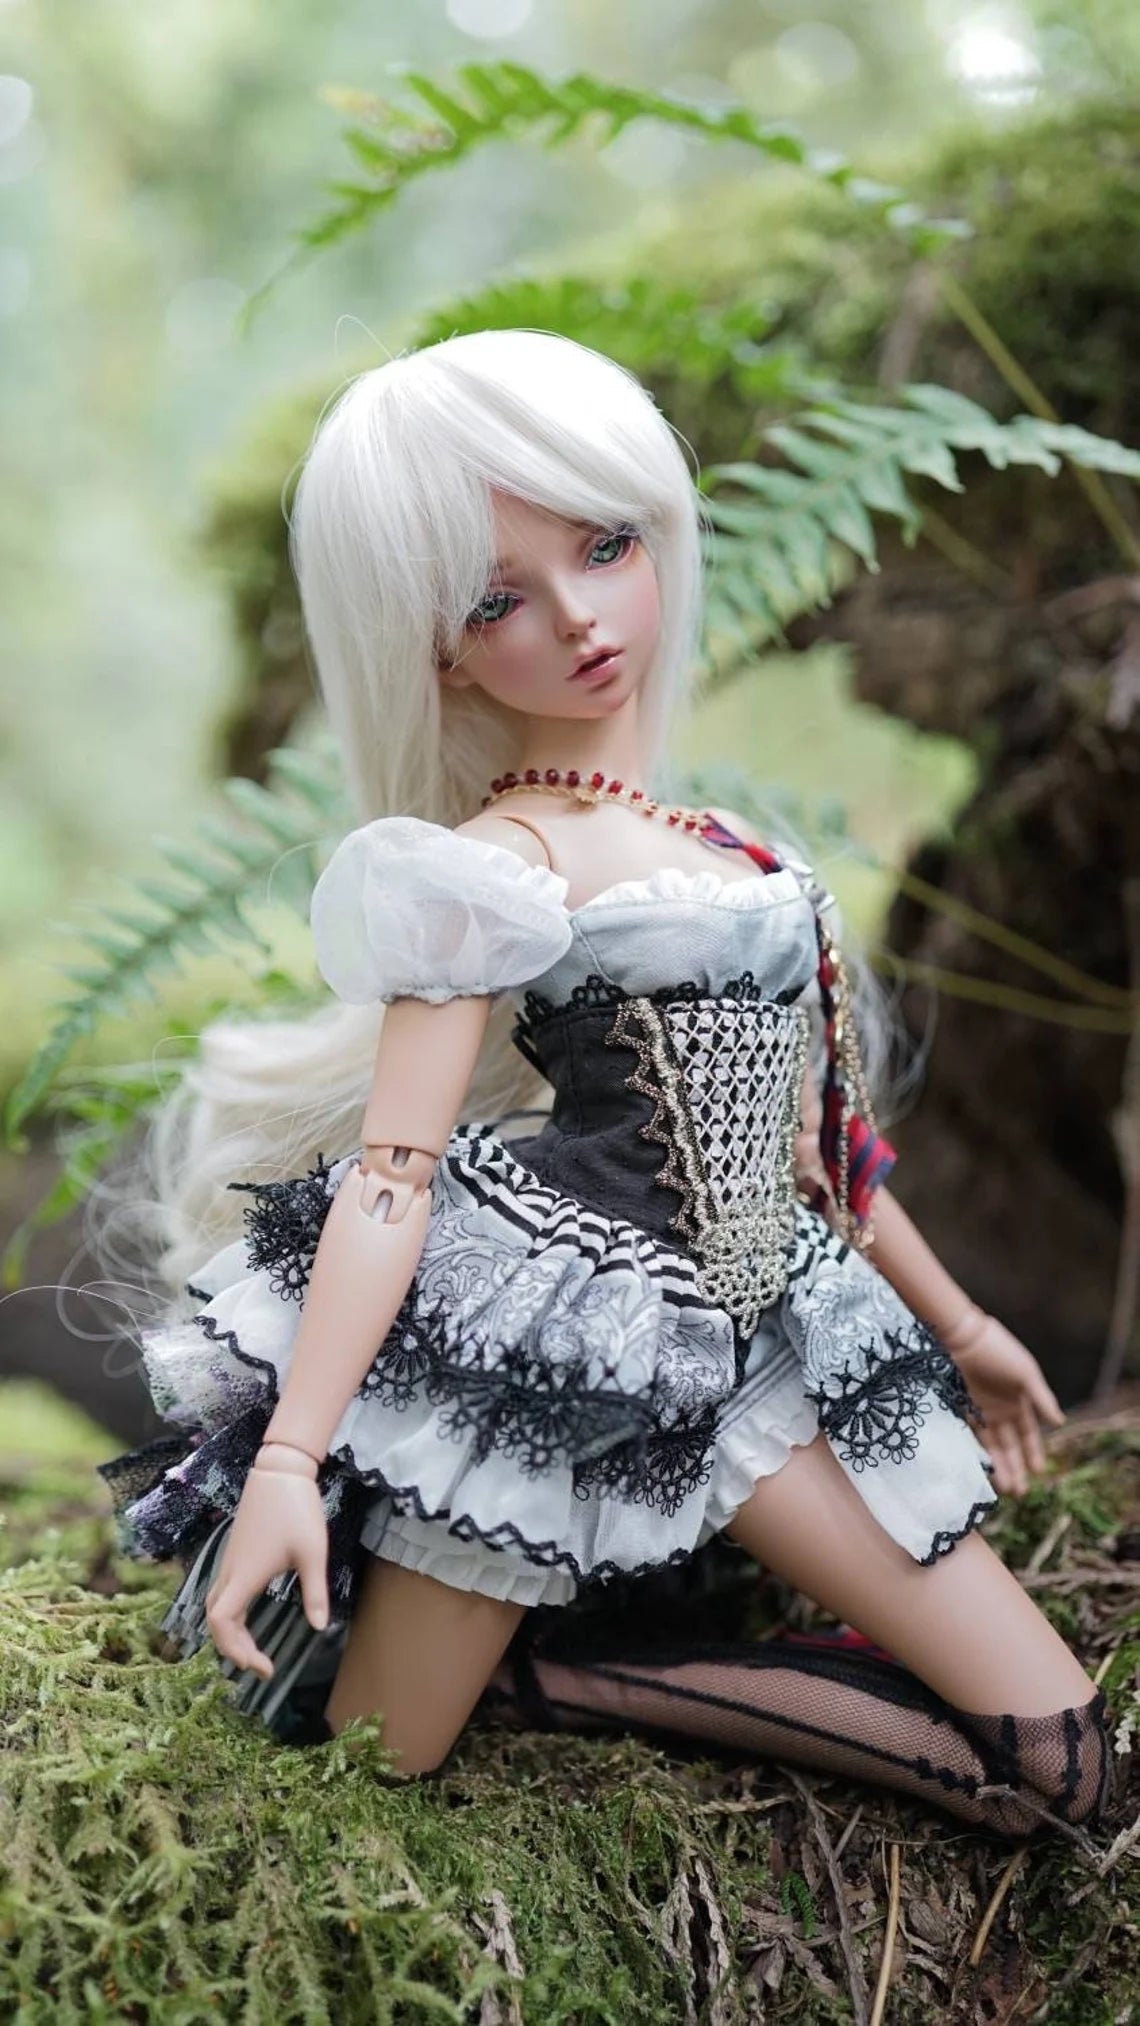 Custom doll Wig for Minifee 1/4 BJD Dolls- "TAN CAPS" 6-7" head size of Bjd, msd, Boneka ,Fairyland Minifee dolls light blonde natural